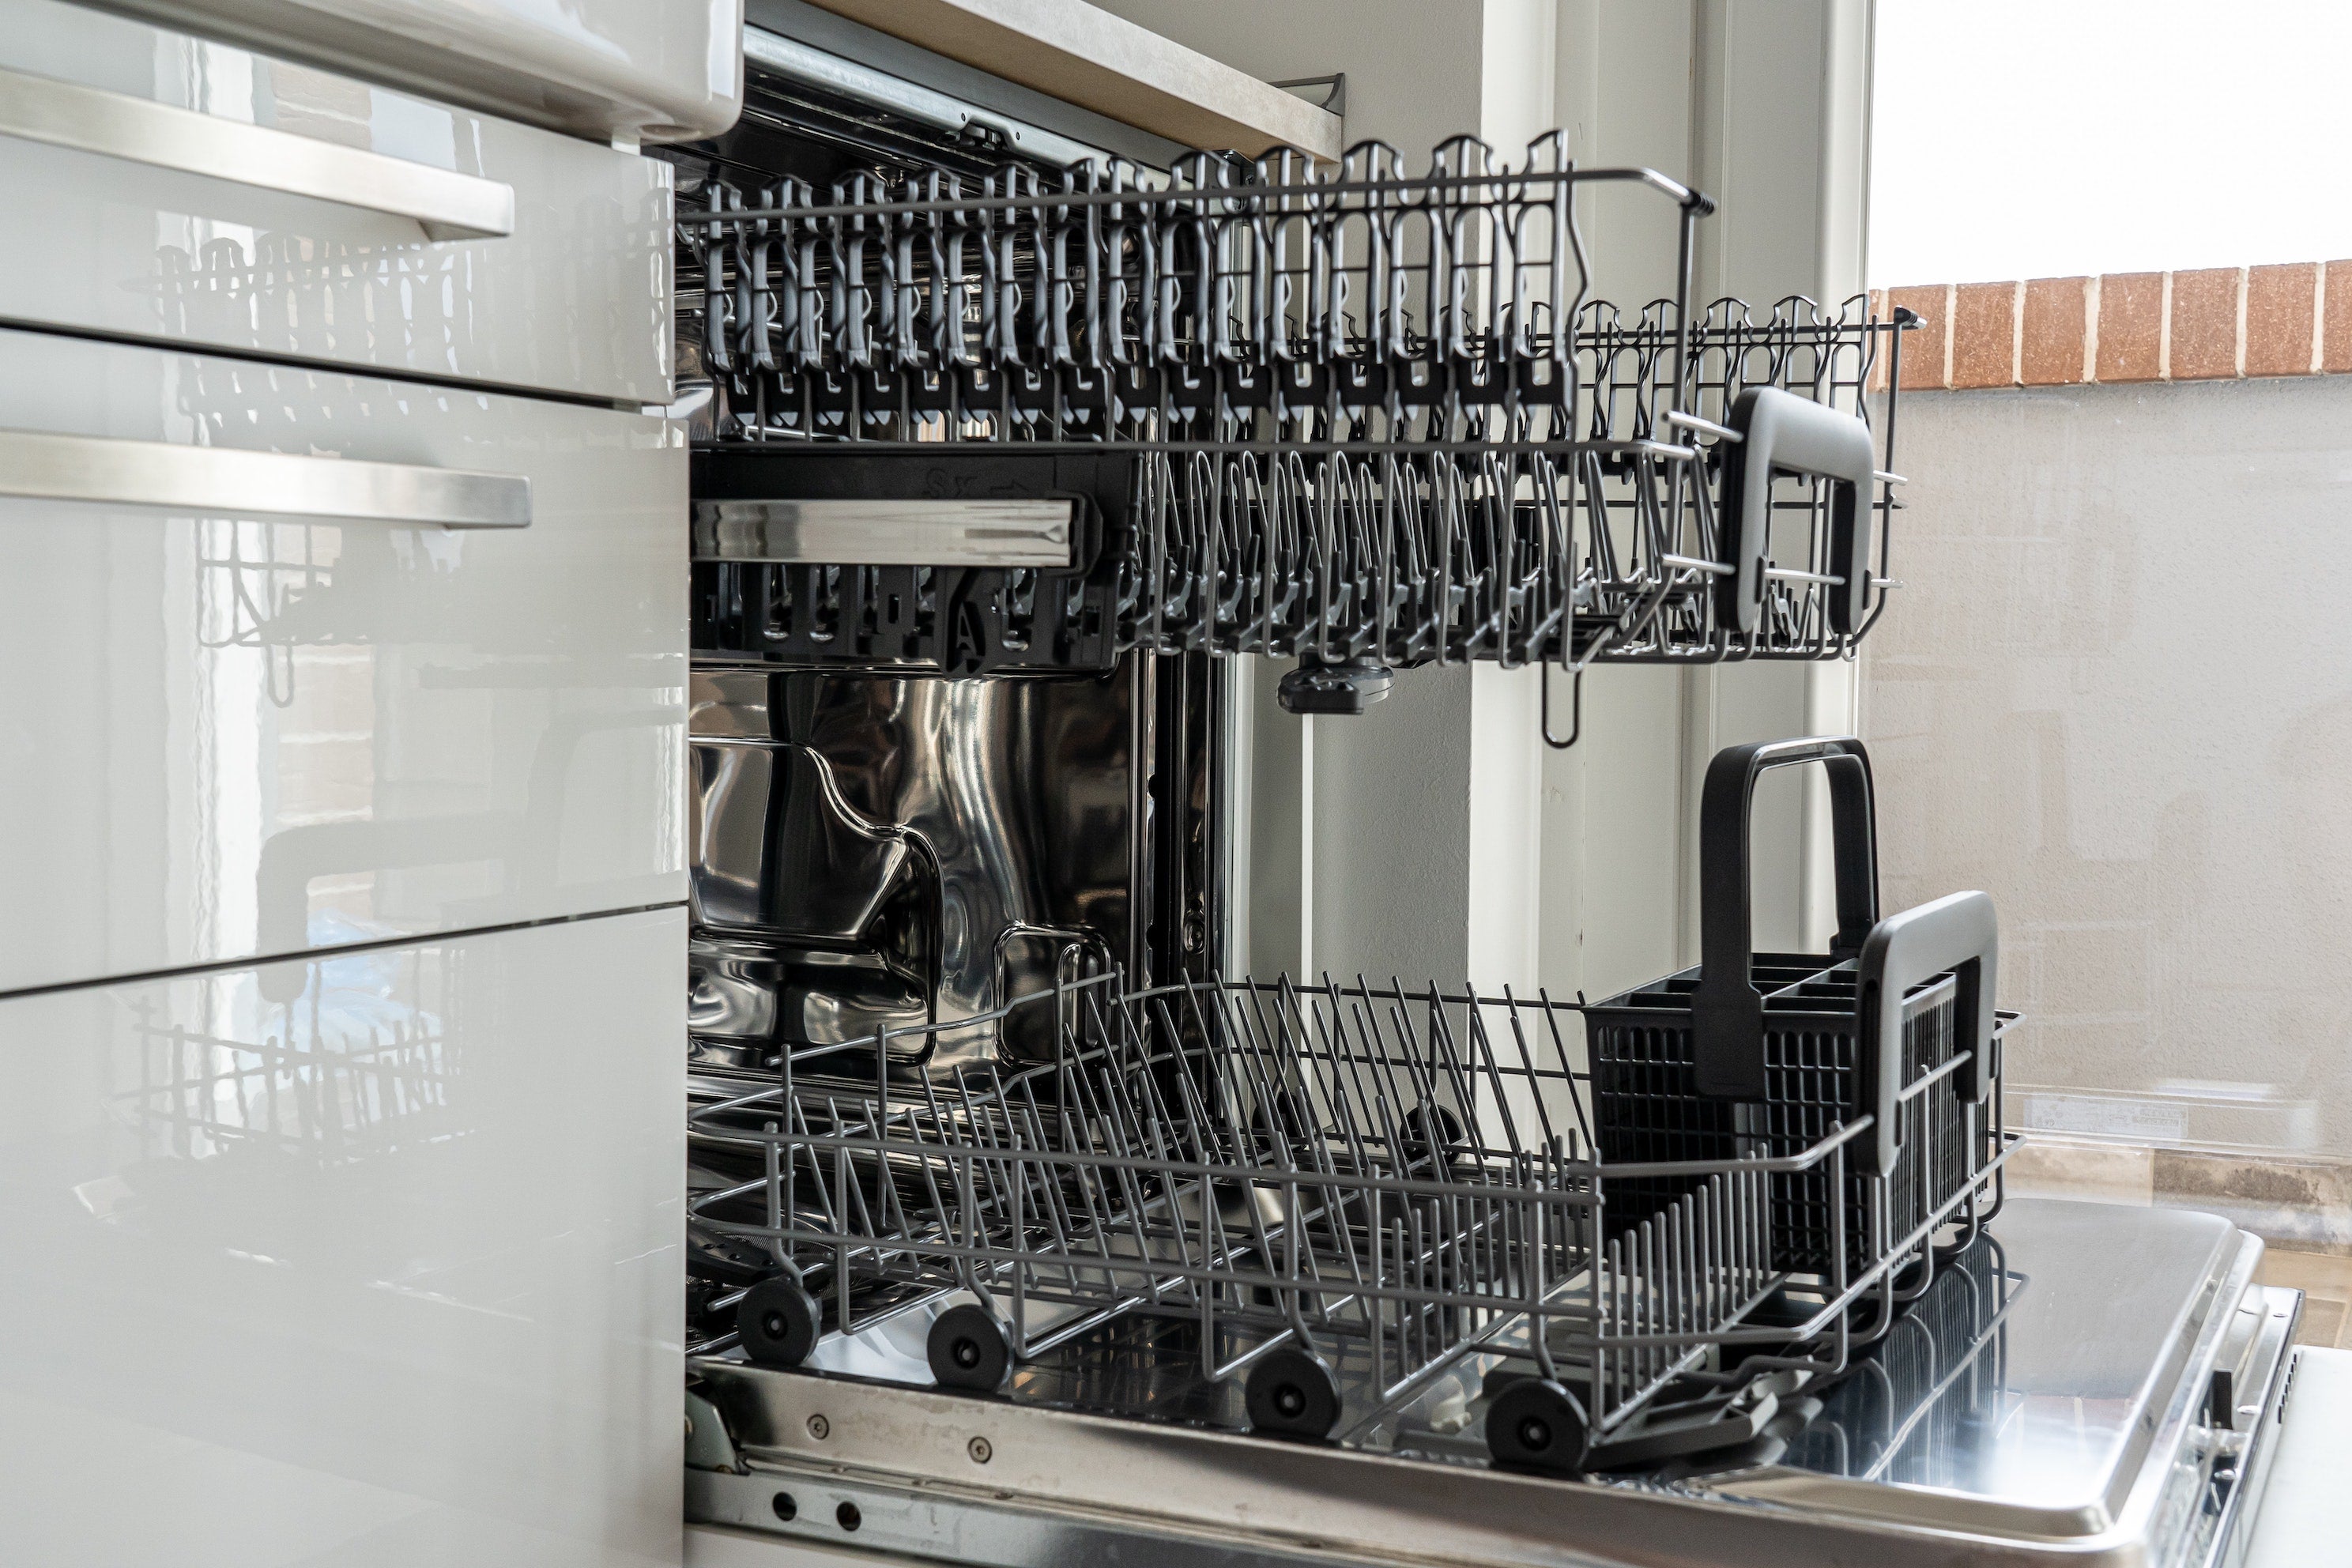 Mauvaise pratique : pourquoi il ne faut pas rincer la vaisselle